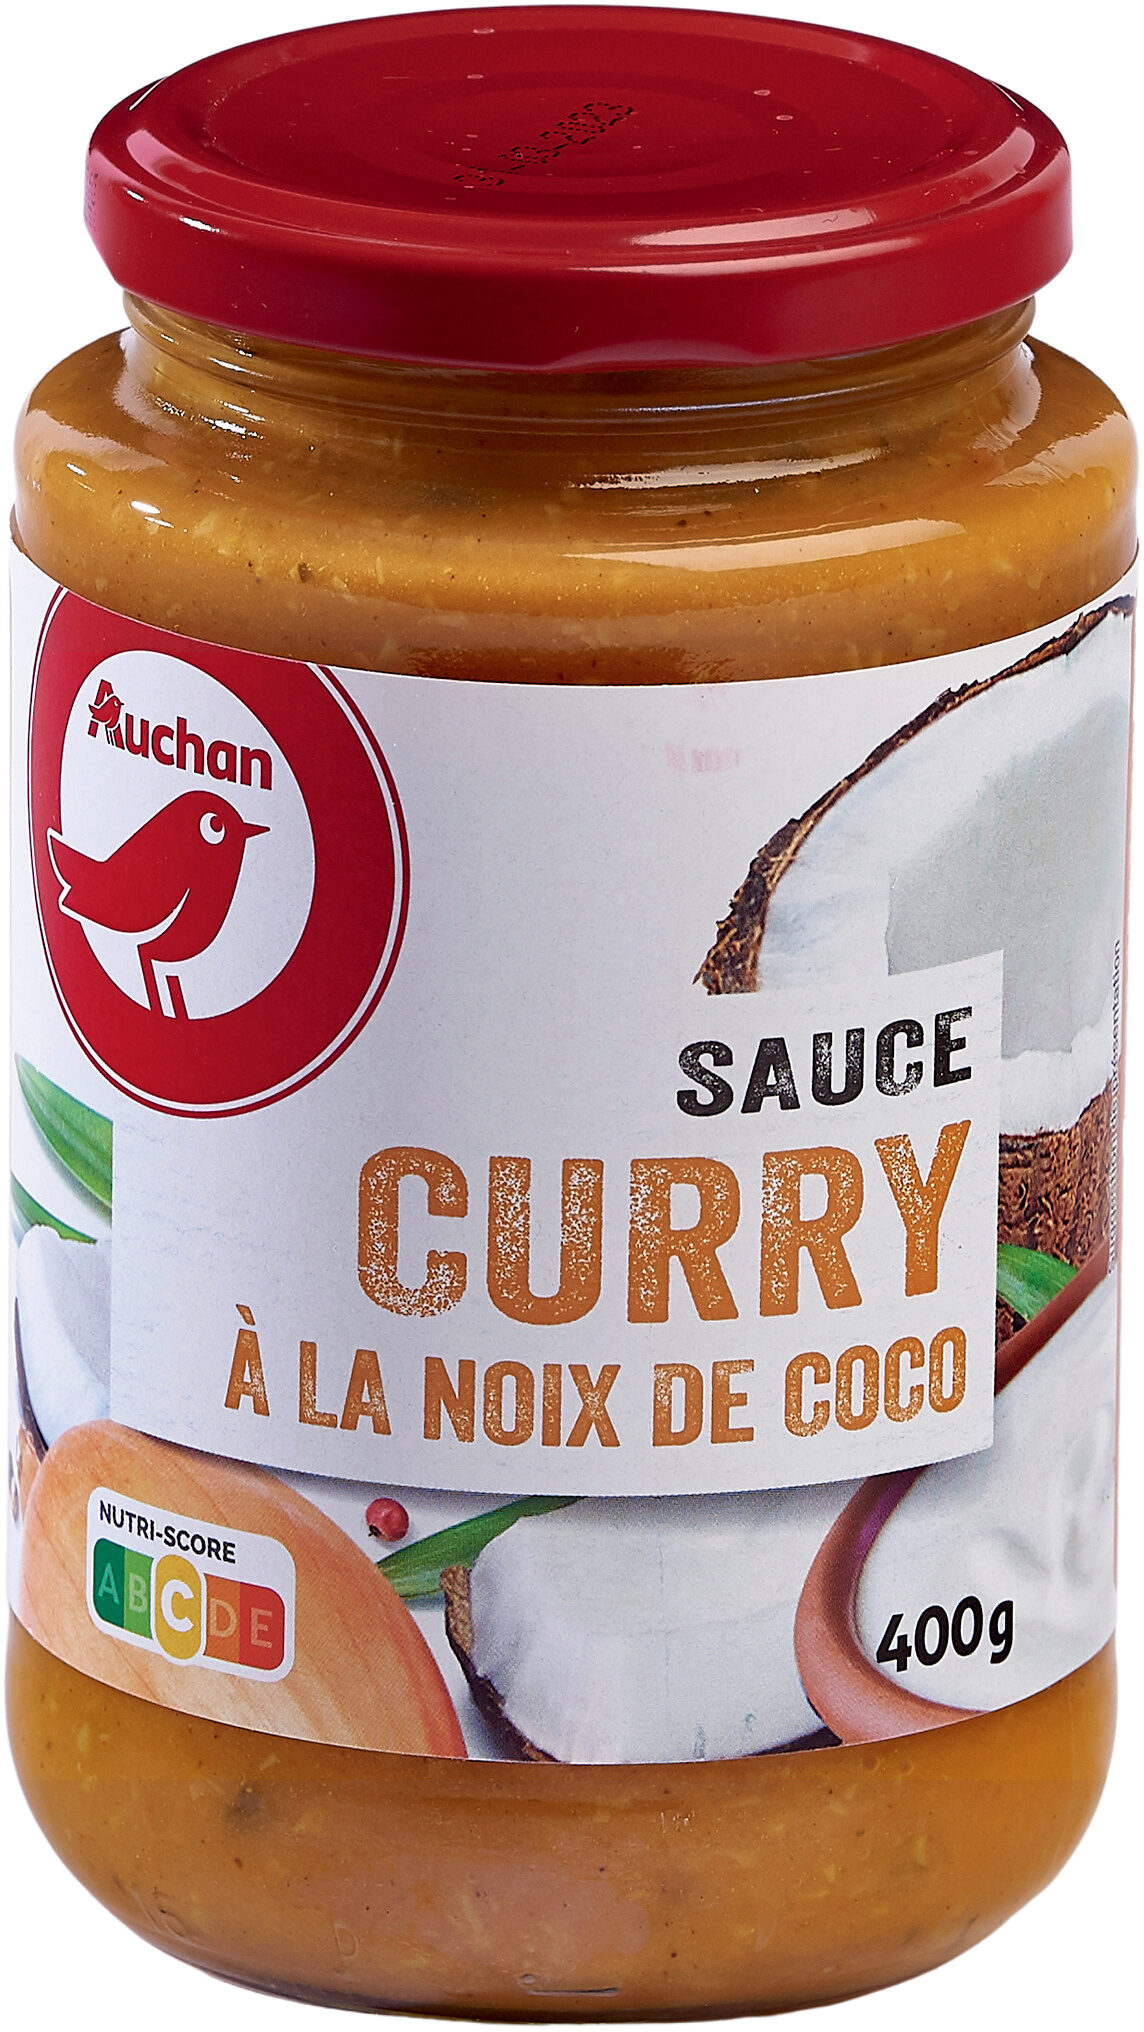 Sauce Curry à la noix de coco - Product - fr